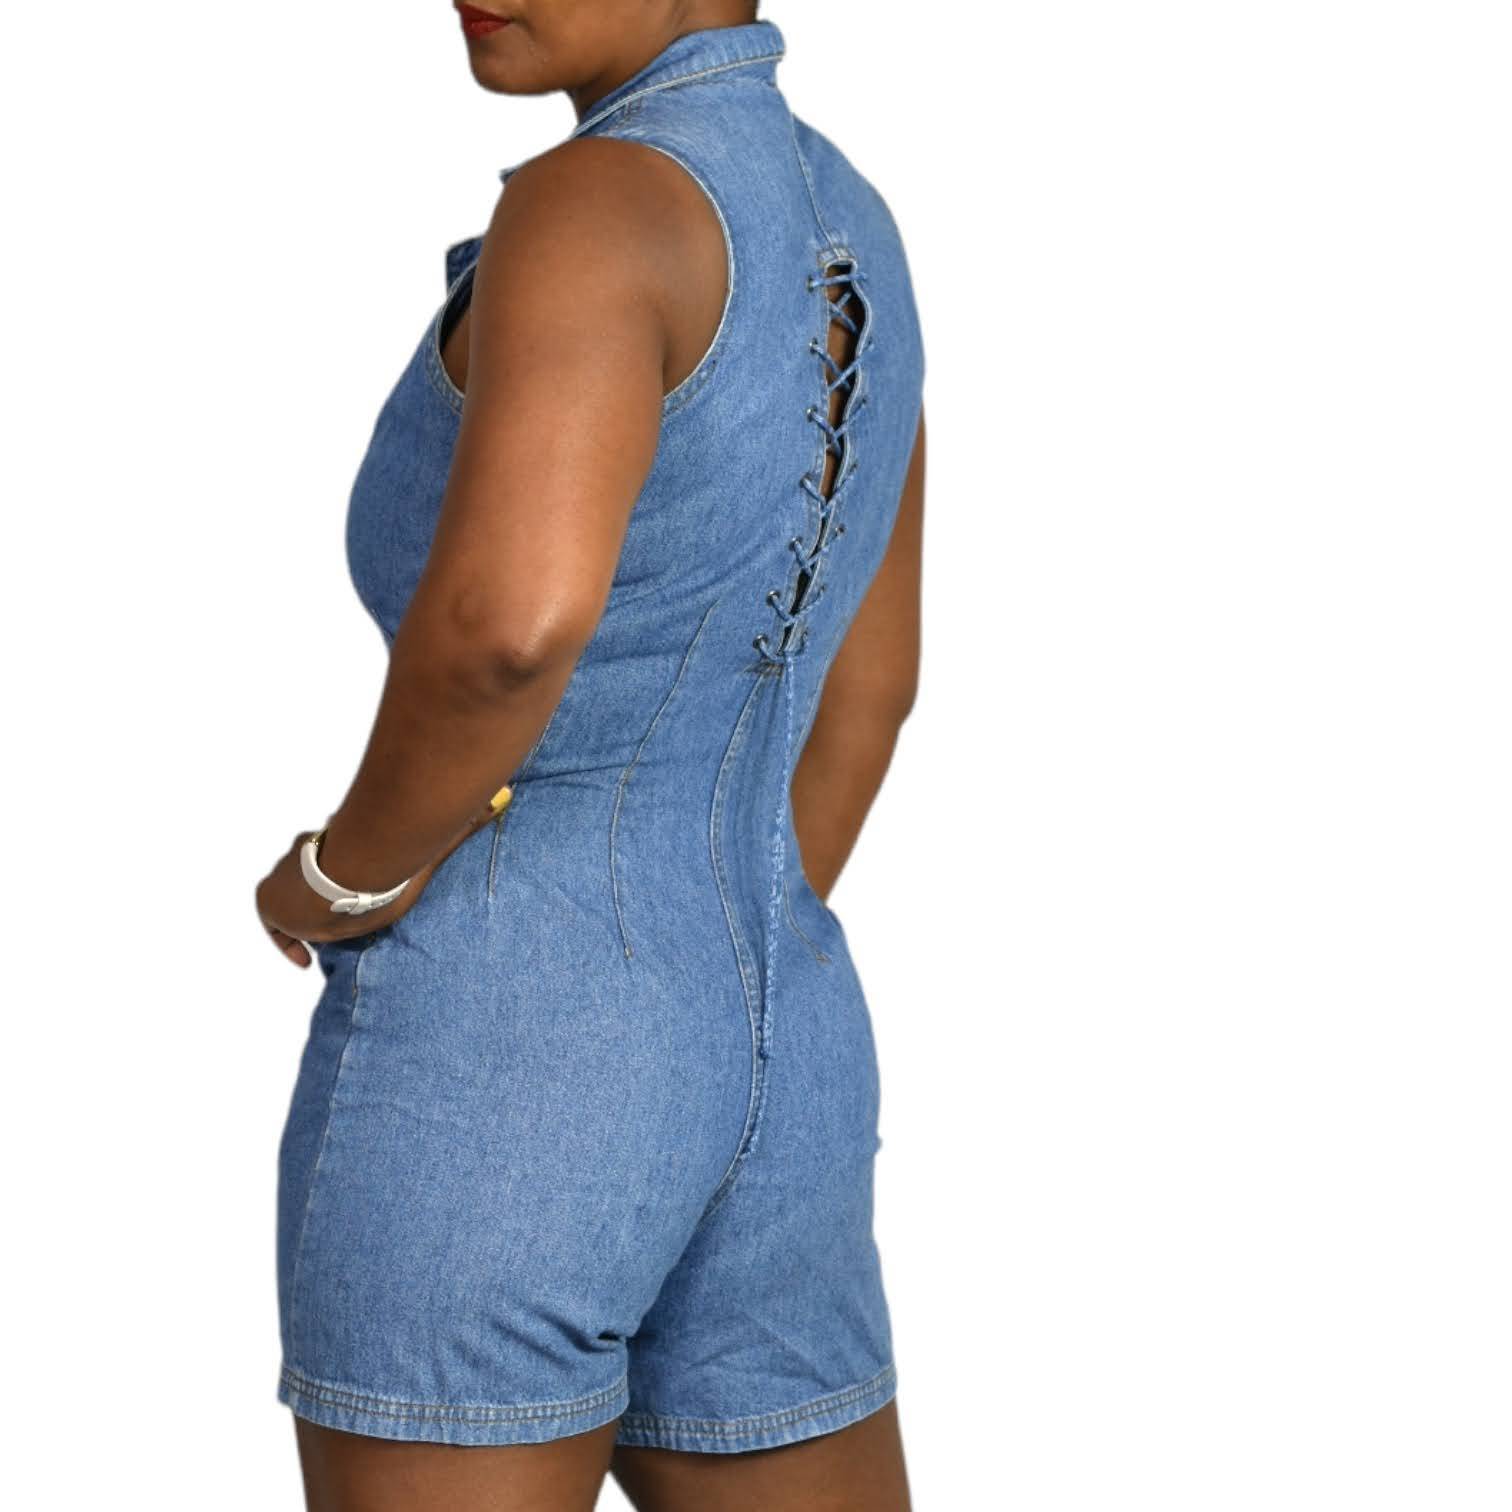 Vintage Denim Romper Jeans Playsuit Shorts Laced Back Cutout Blue Cotton Size XS